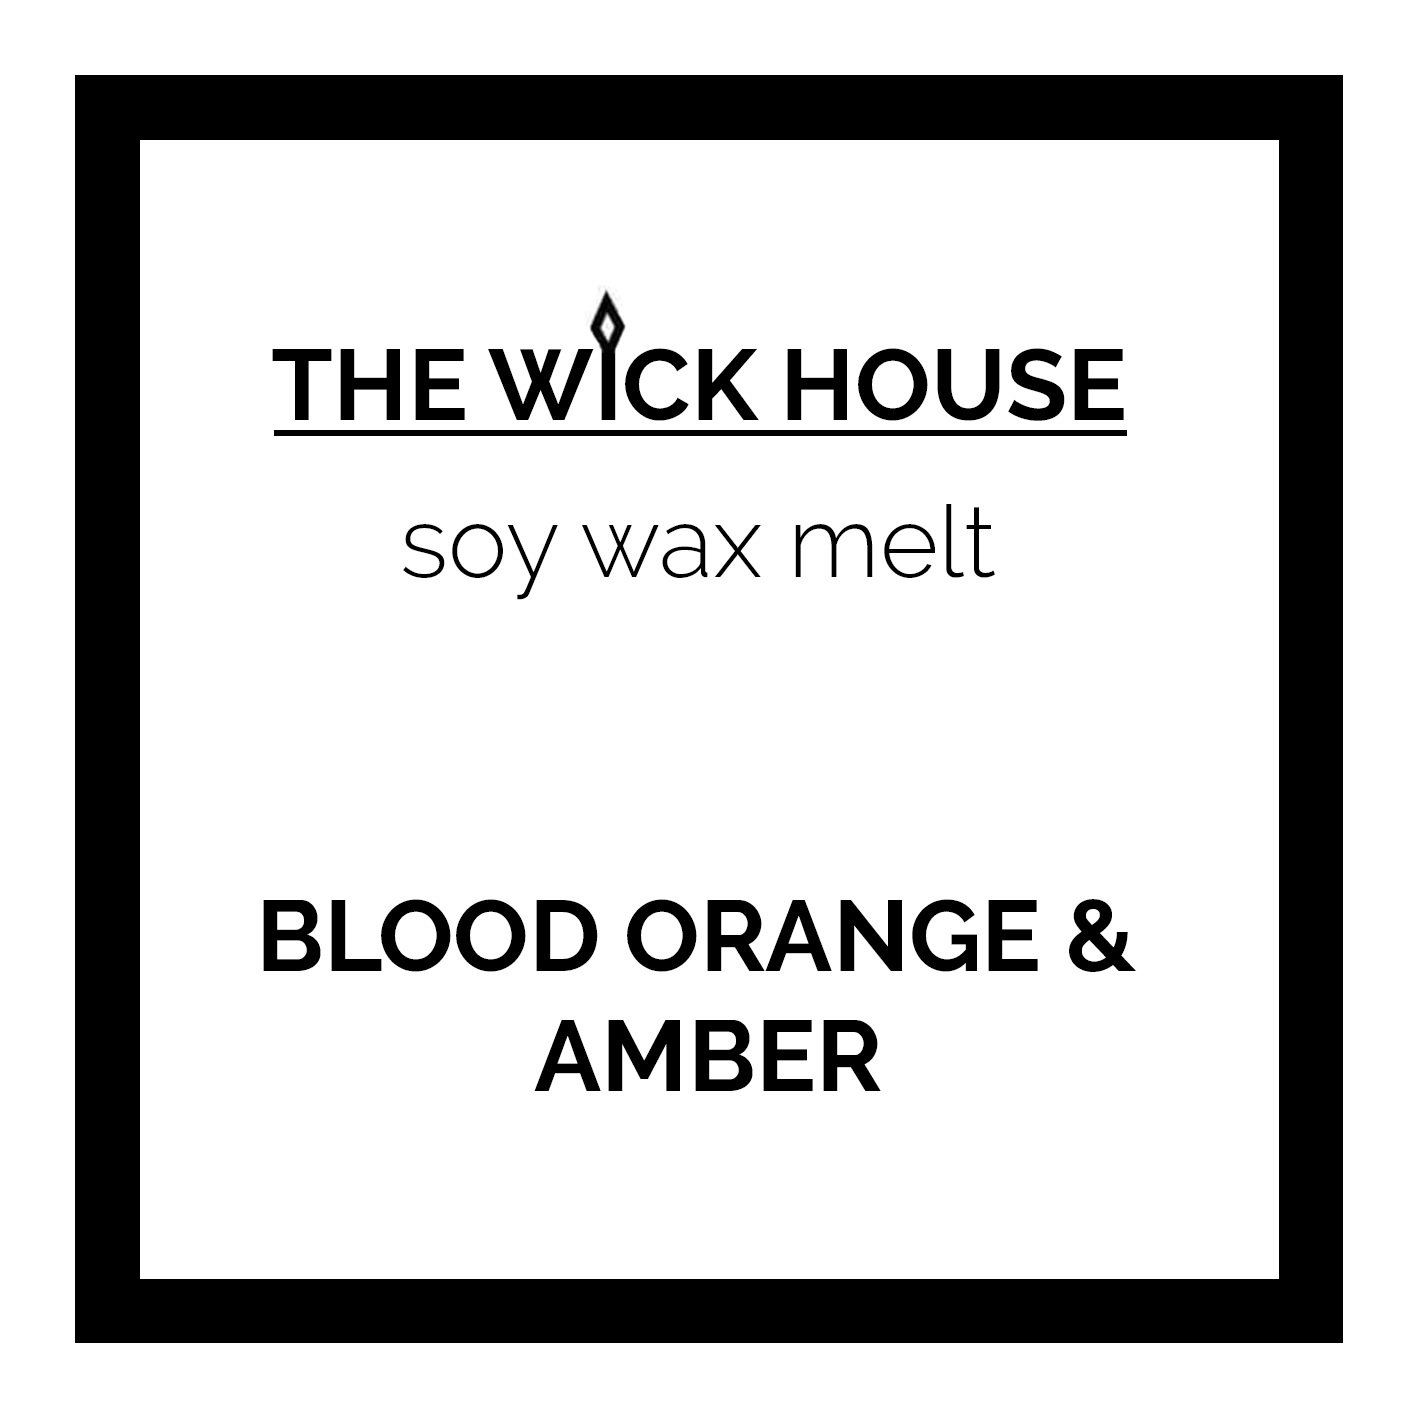 Blood Orange & Amber - Old Labels